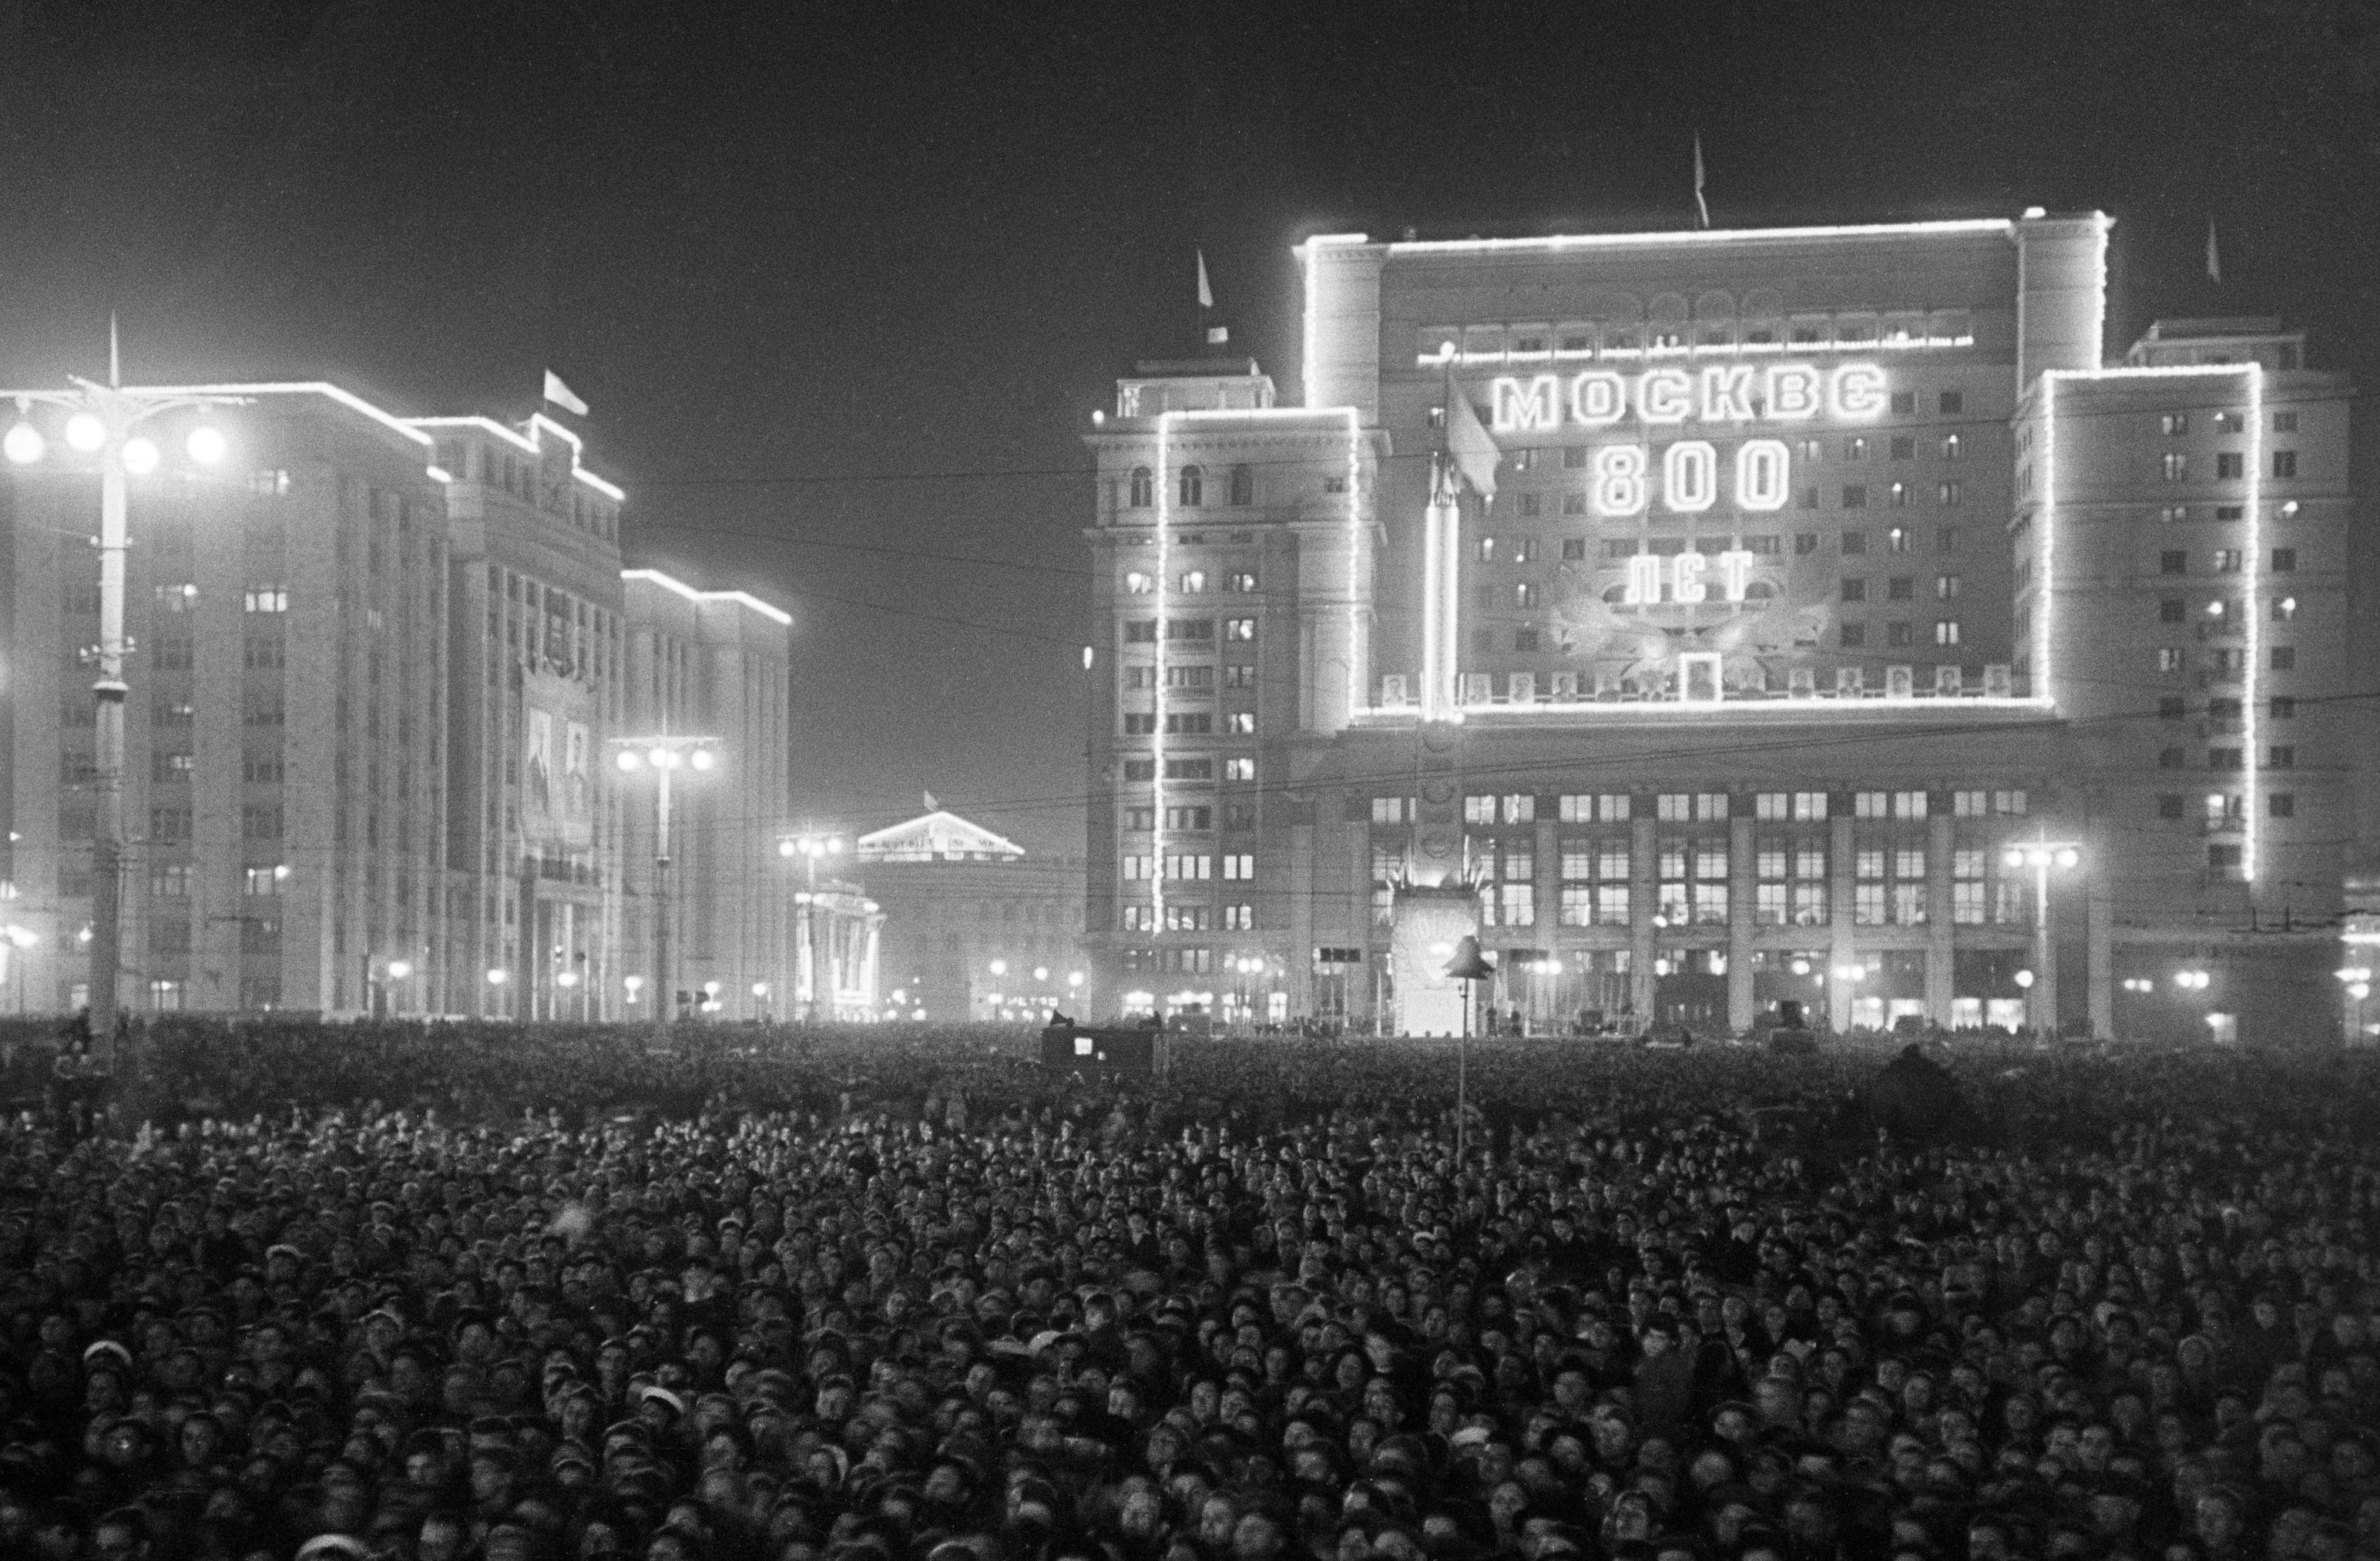 Празднование 800-летия основания Москвы у гостиницы "Москва" на Манежной площади, 7 сентября 1947 год